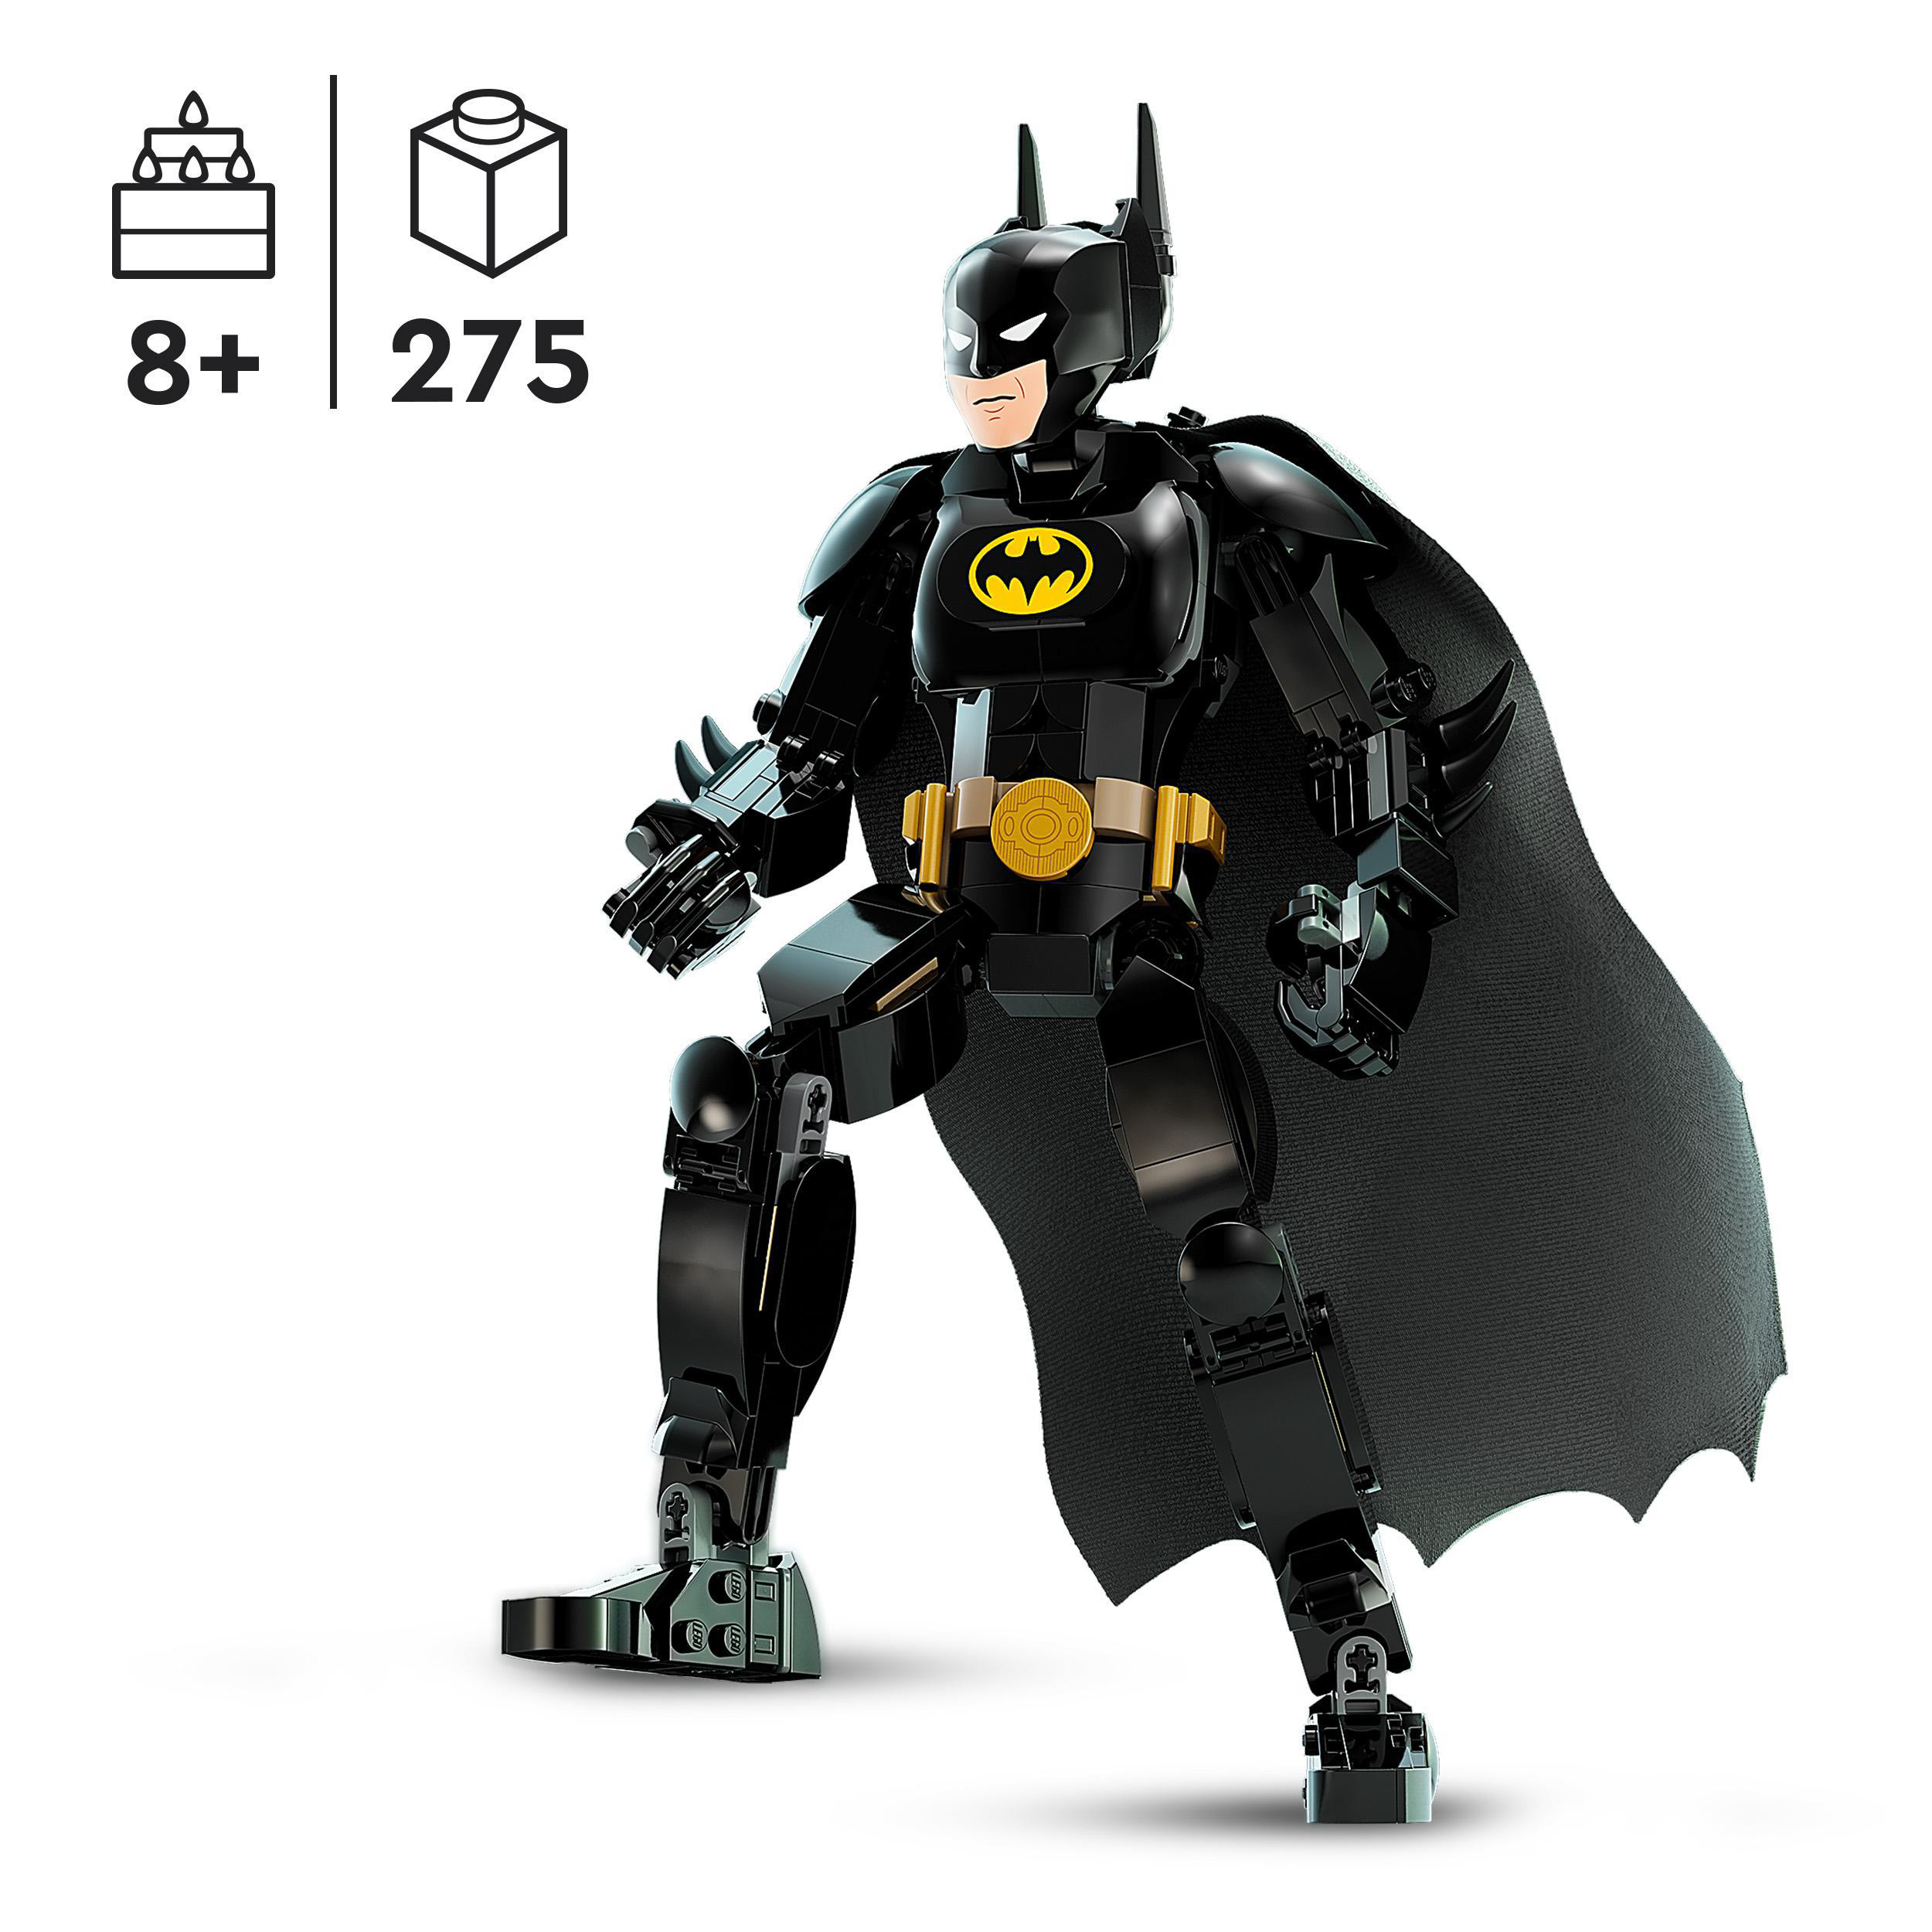 LEGO DC 76259 Baufigur Batman Bausatz, Mehrfarbig